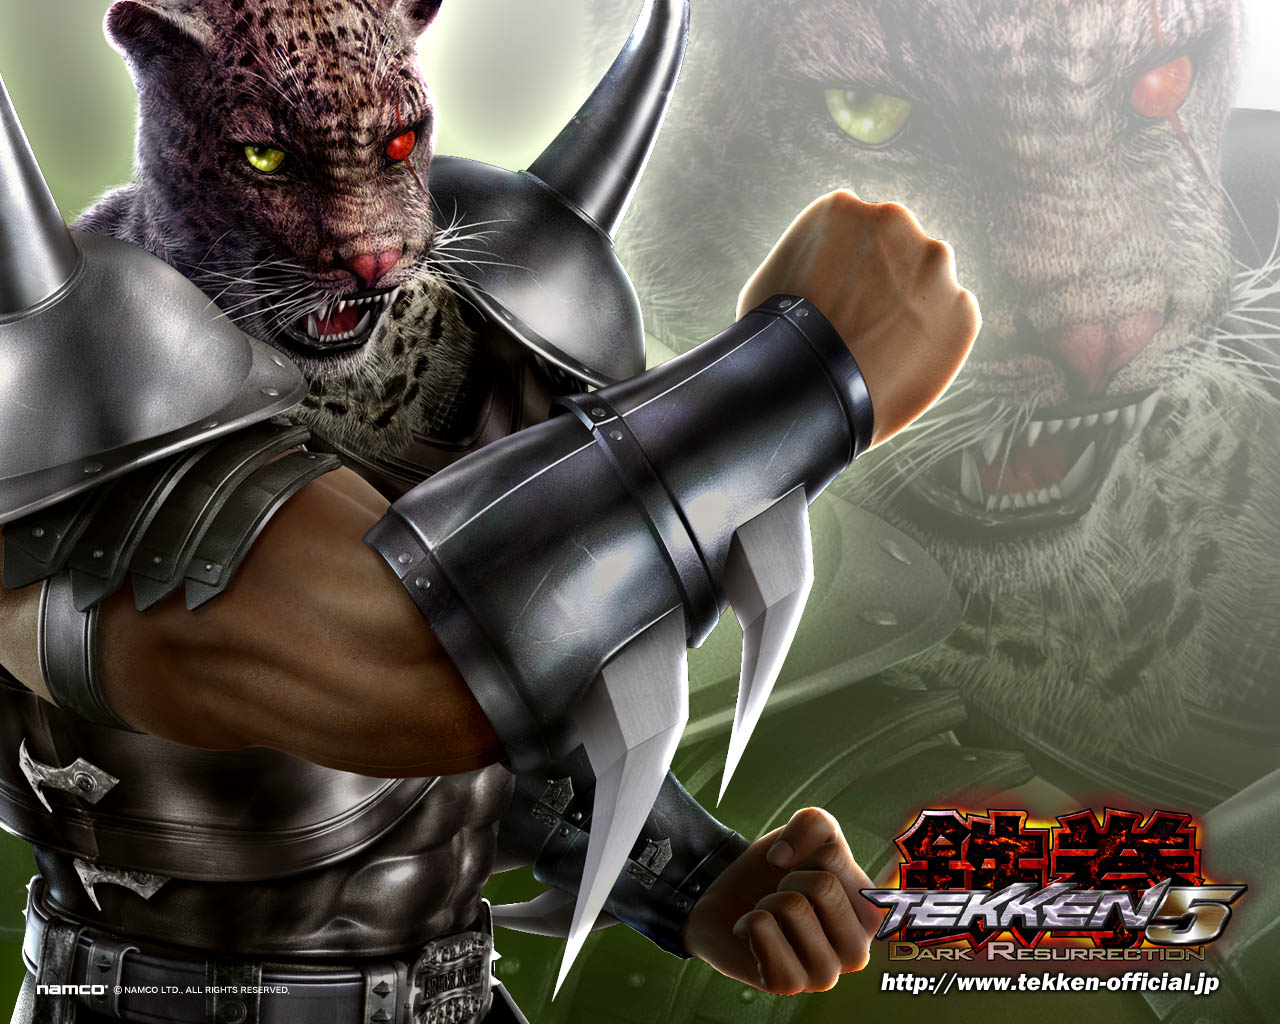  King Tekken Dark Resurrection Wallpaper Armor King Wallpaper